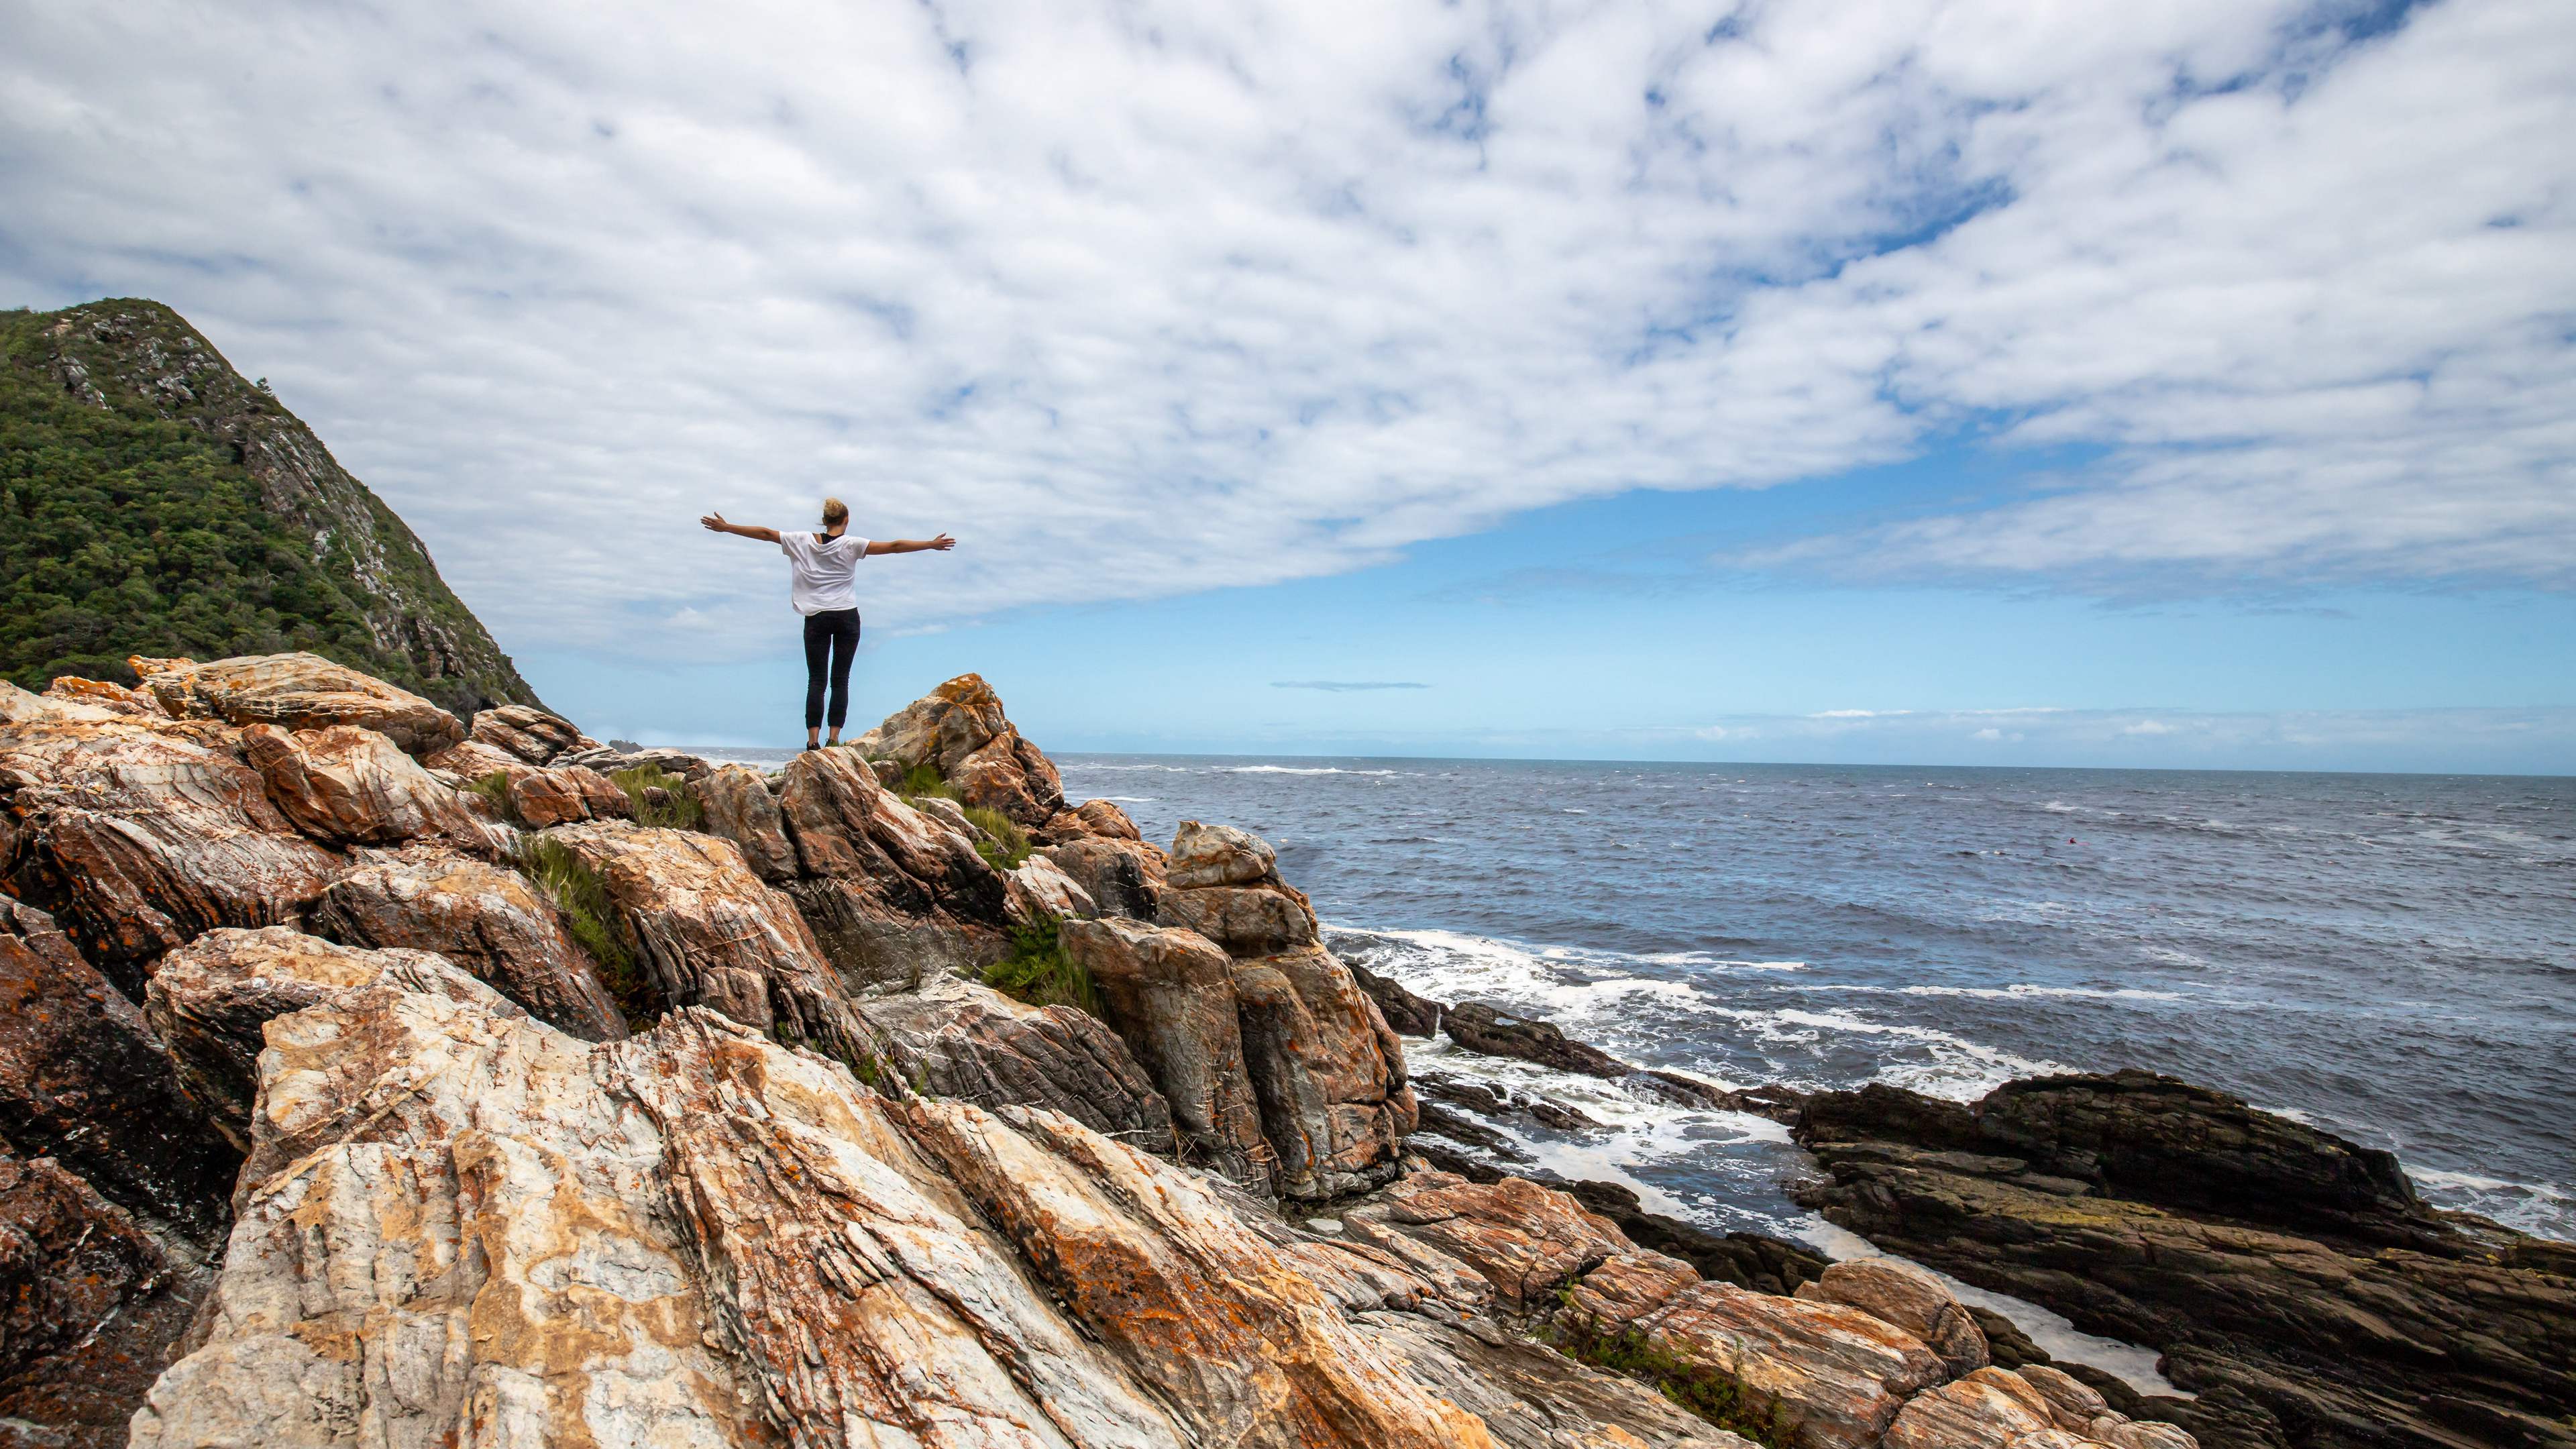 礁石区 站在石头山的欧美女子背影 自由自在海边风景壁纸图片 海边